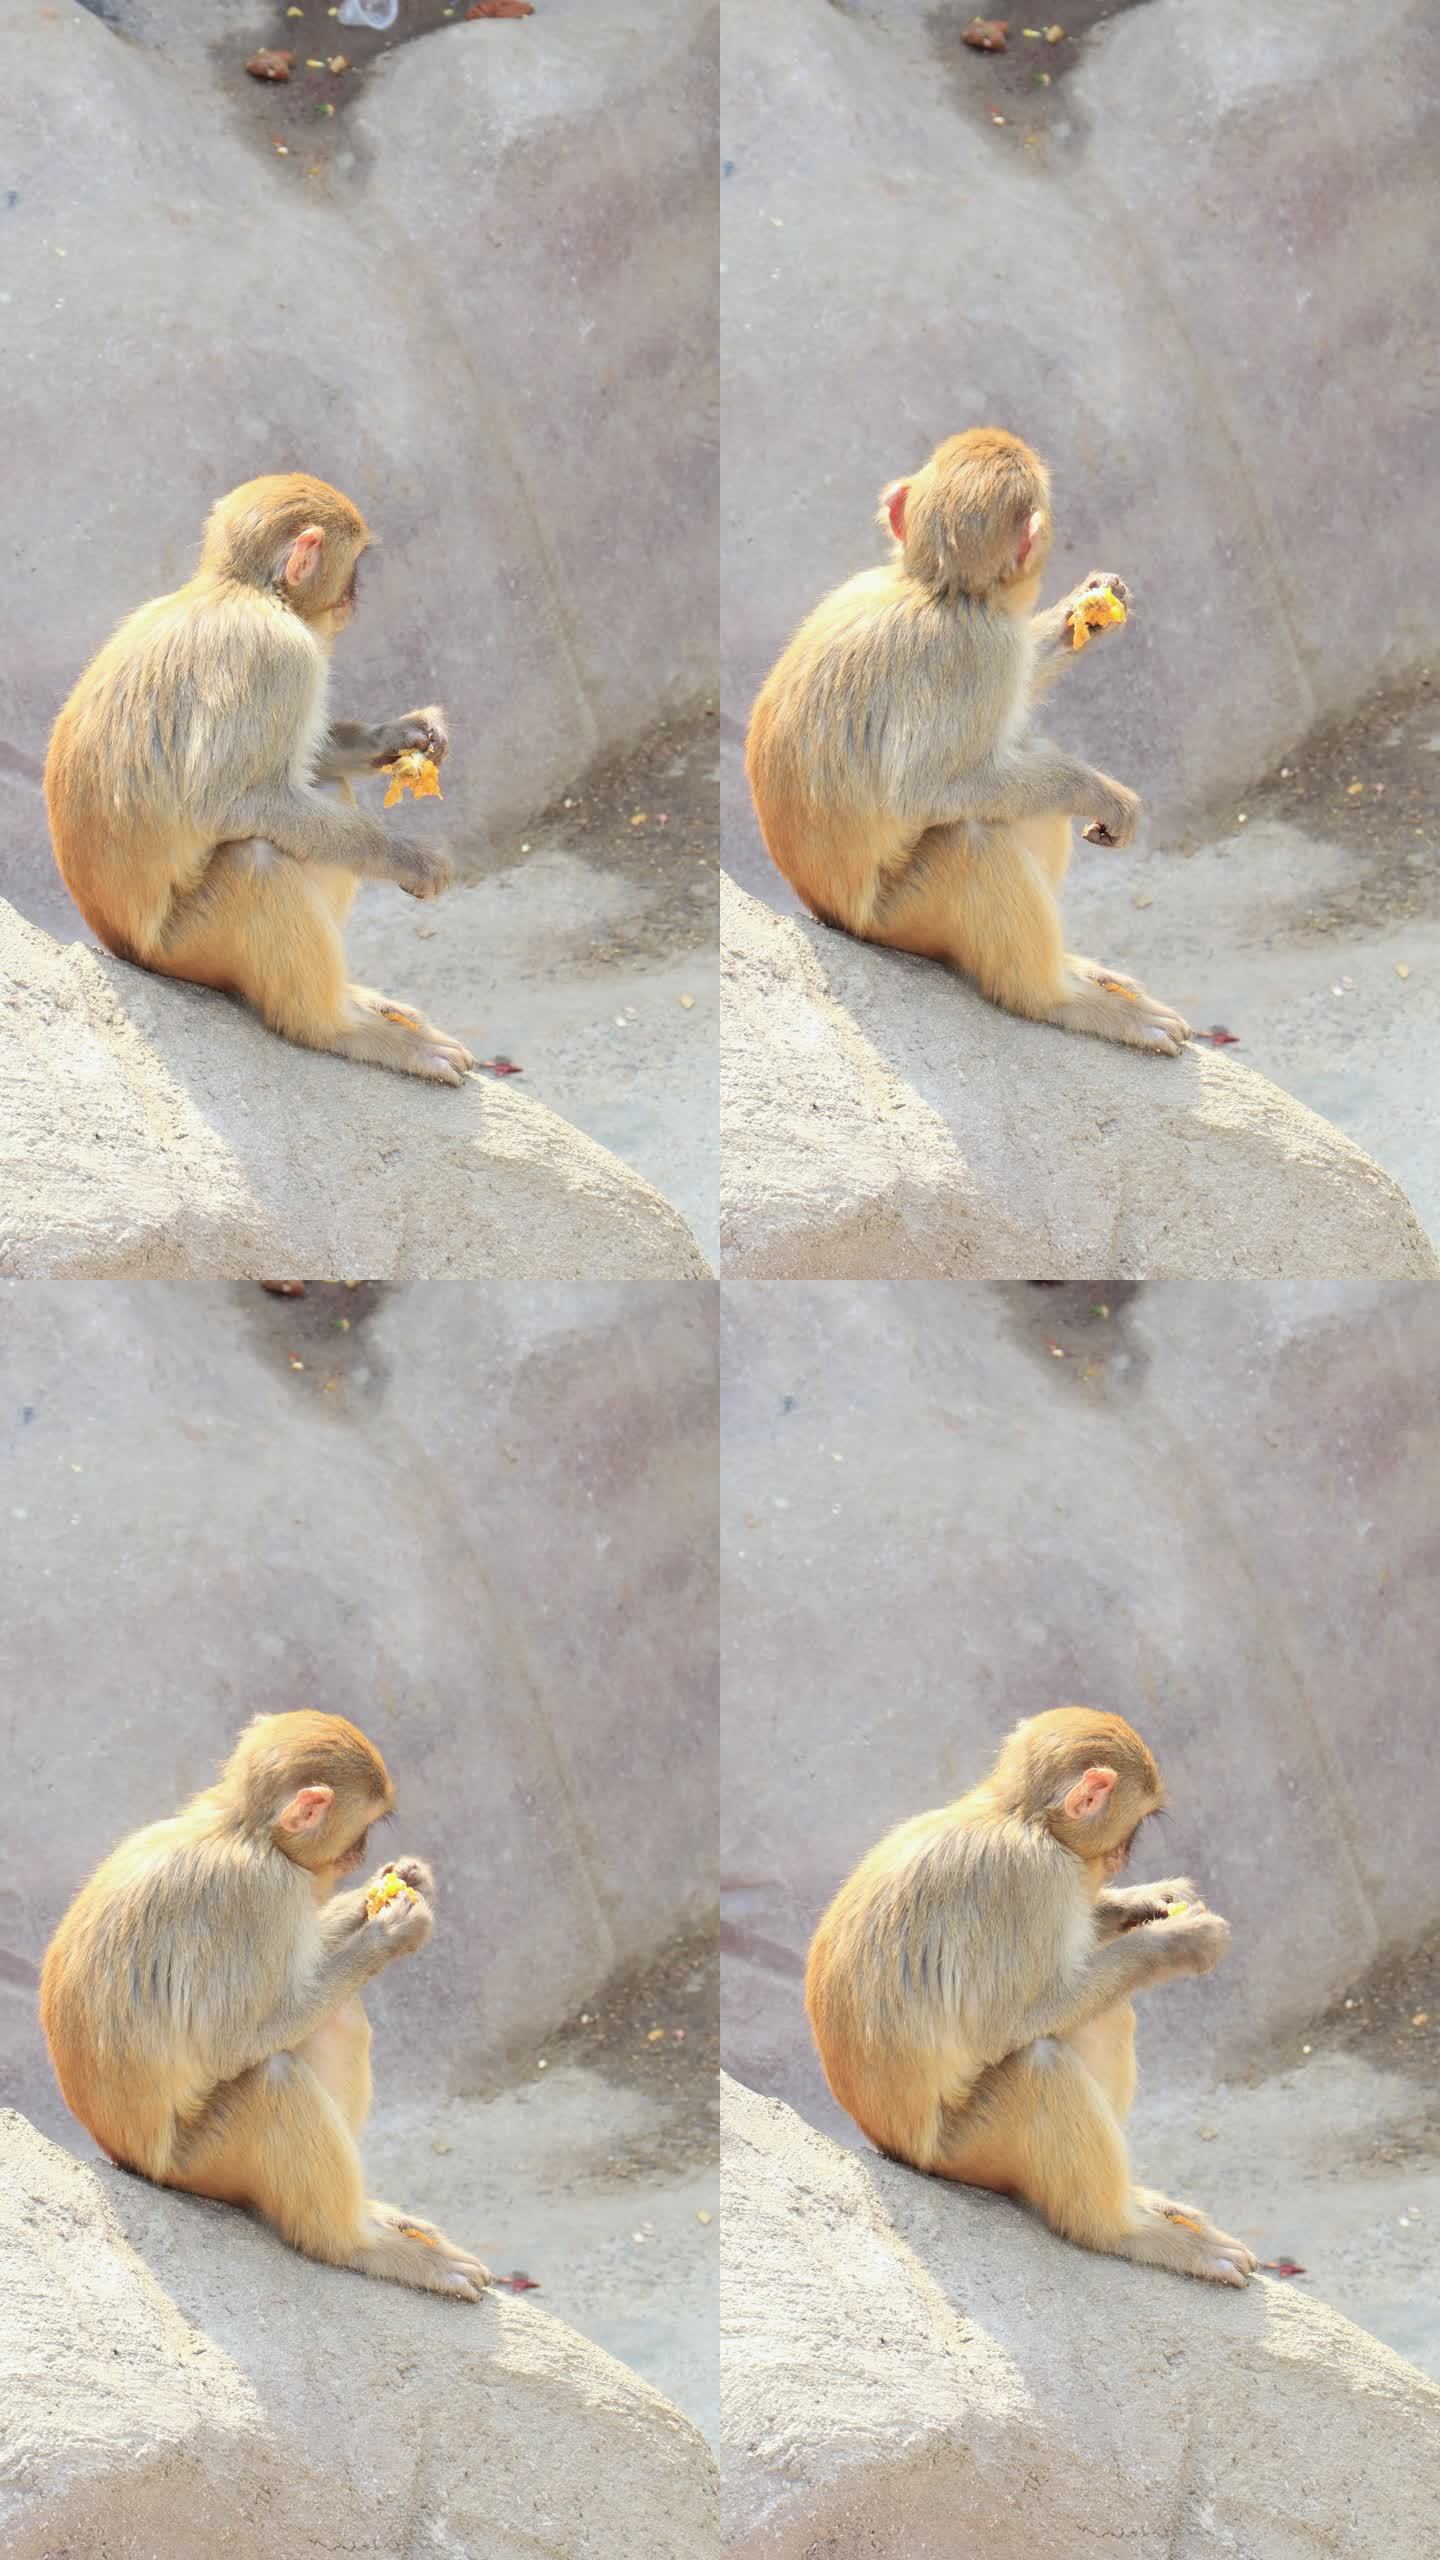 一只小猕猴在吃东西